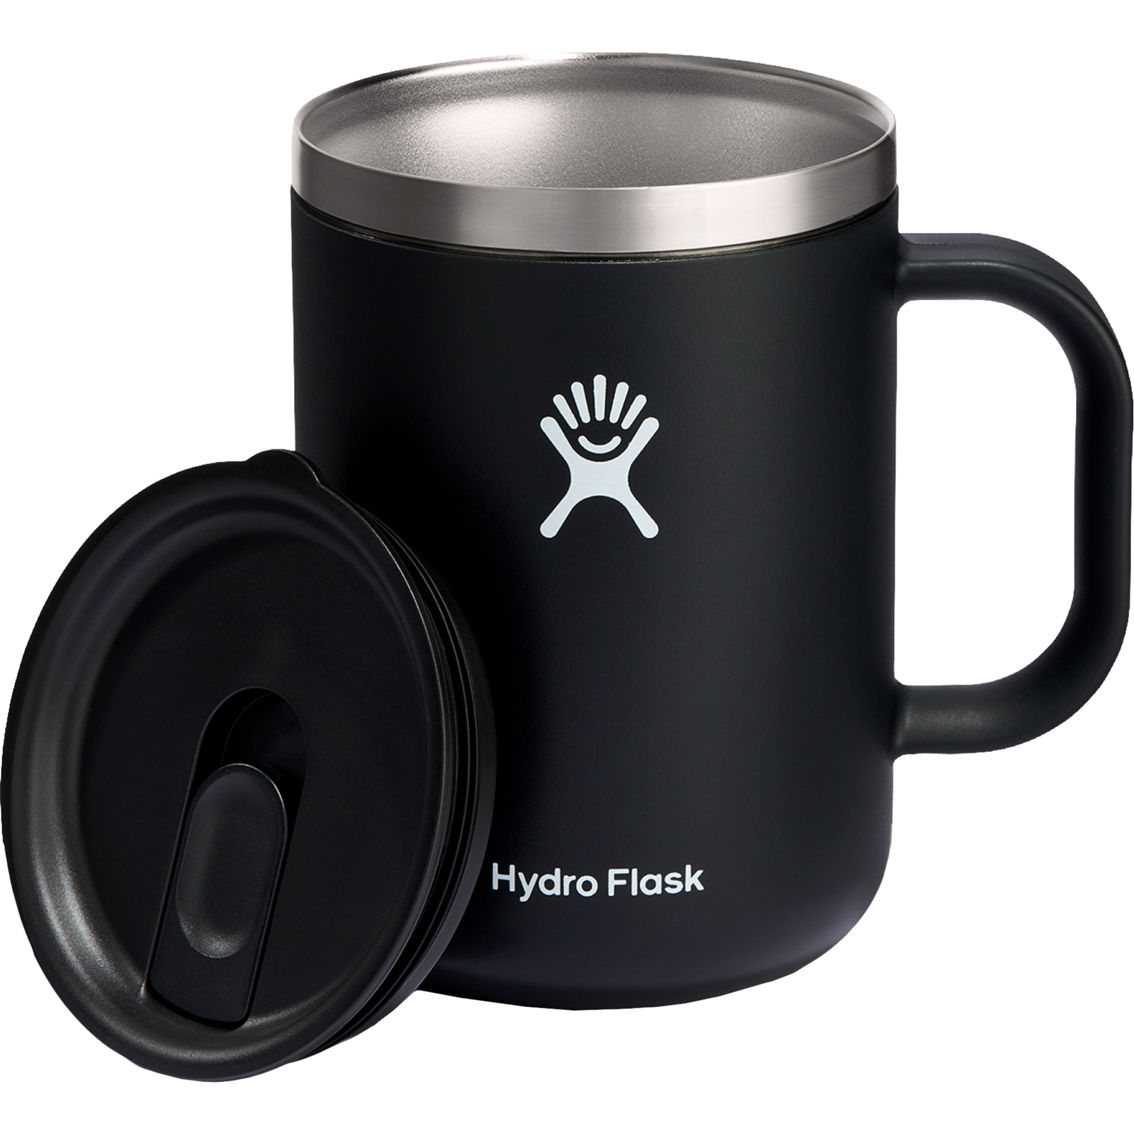 Hydro Flask Travel Mug - Stainless Steel Reusable Mug for Tea Coffee